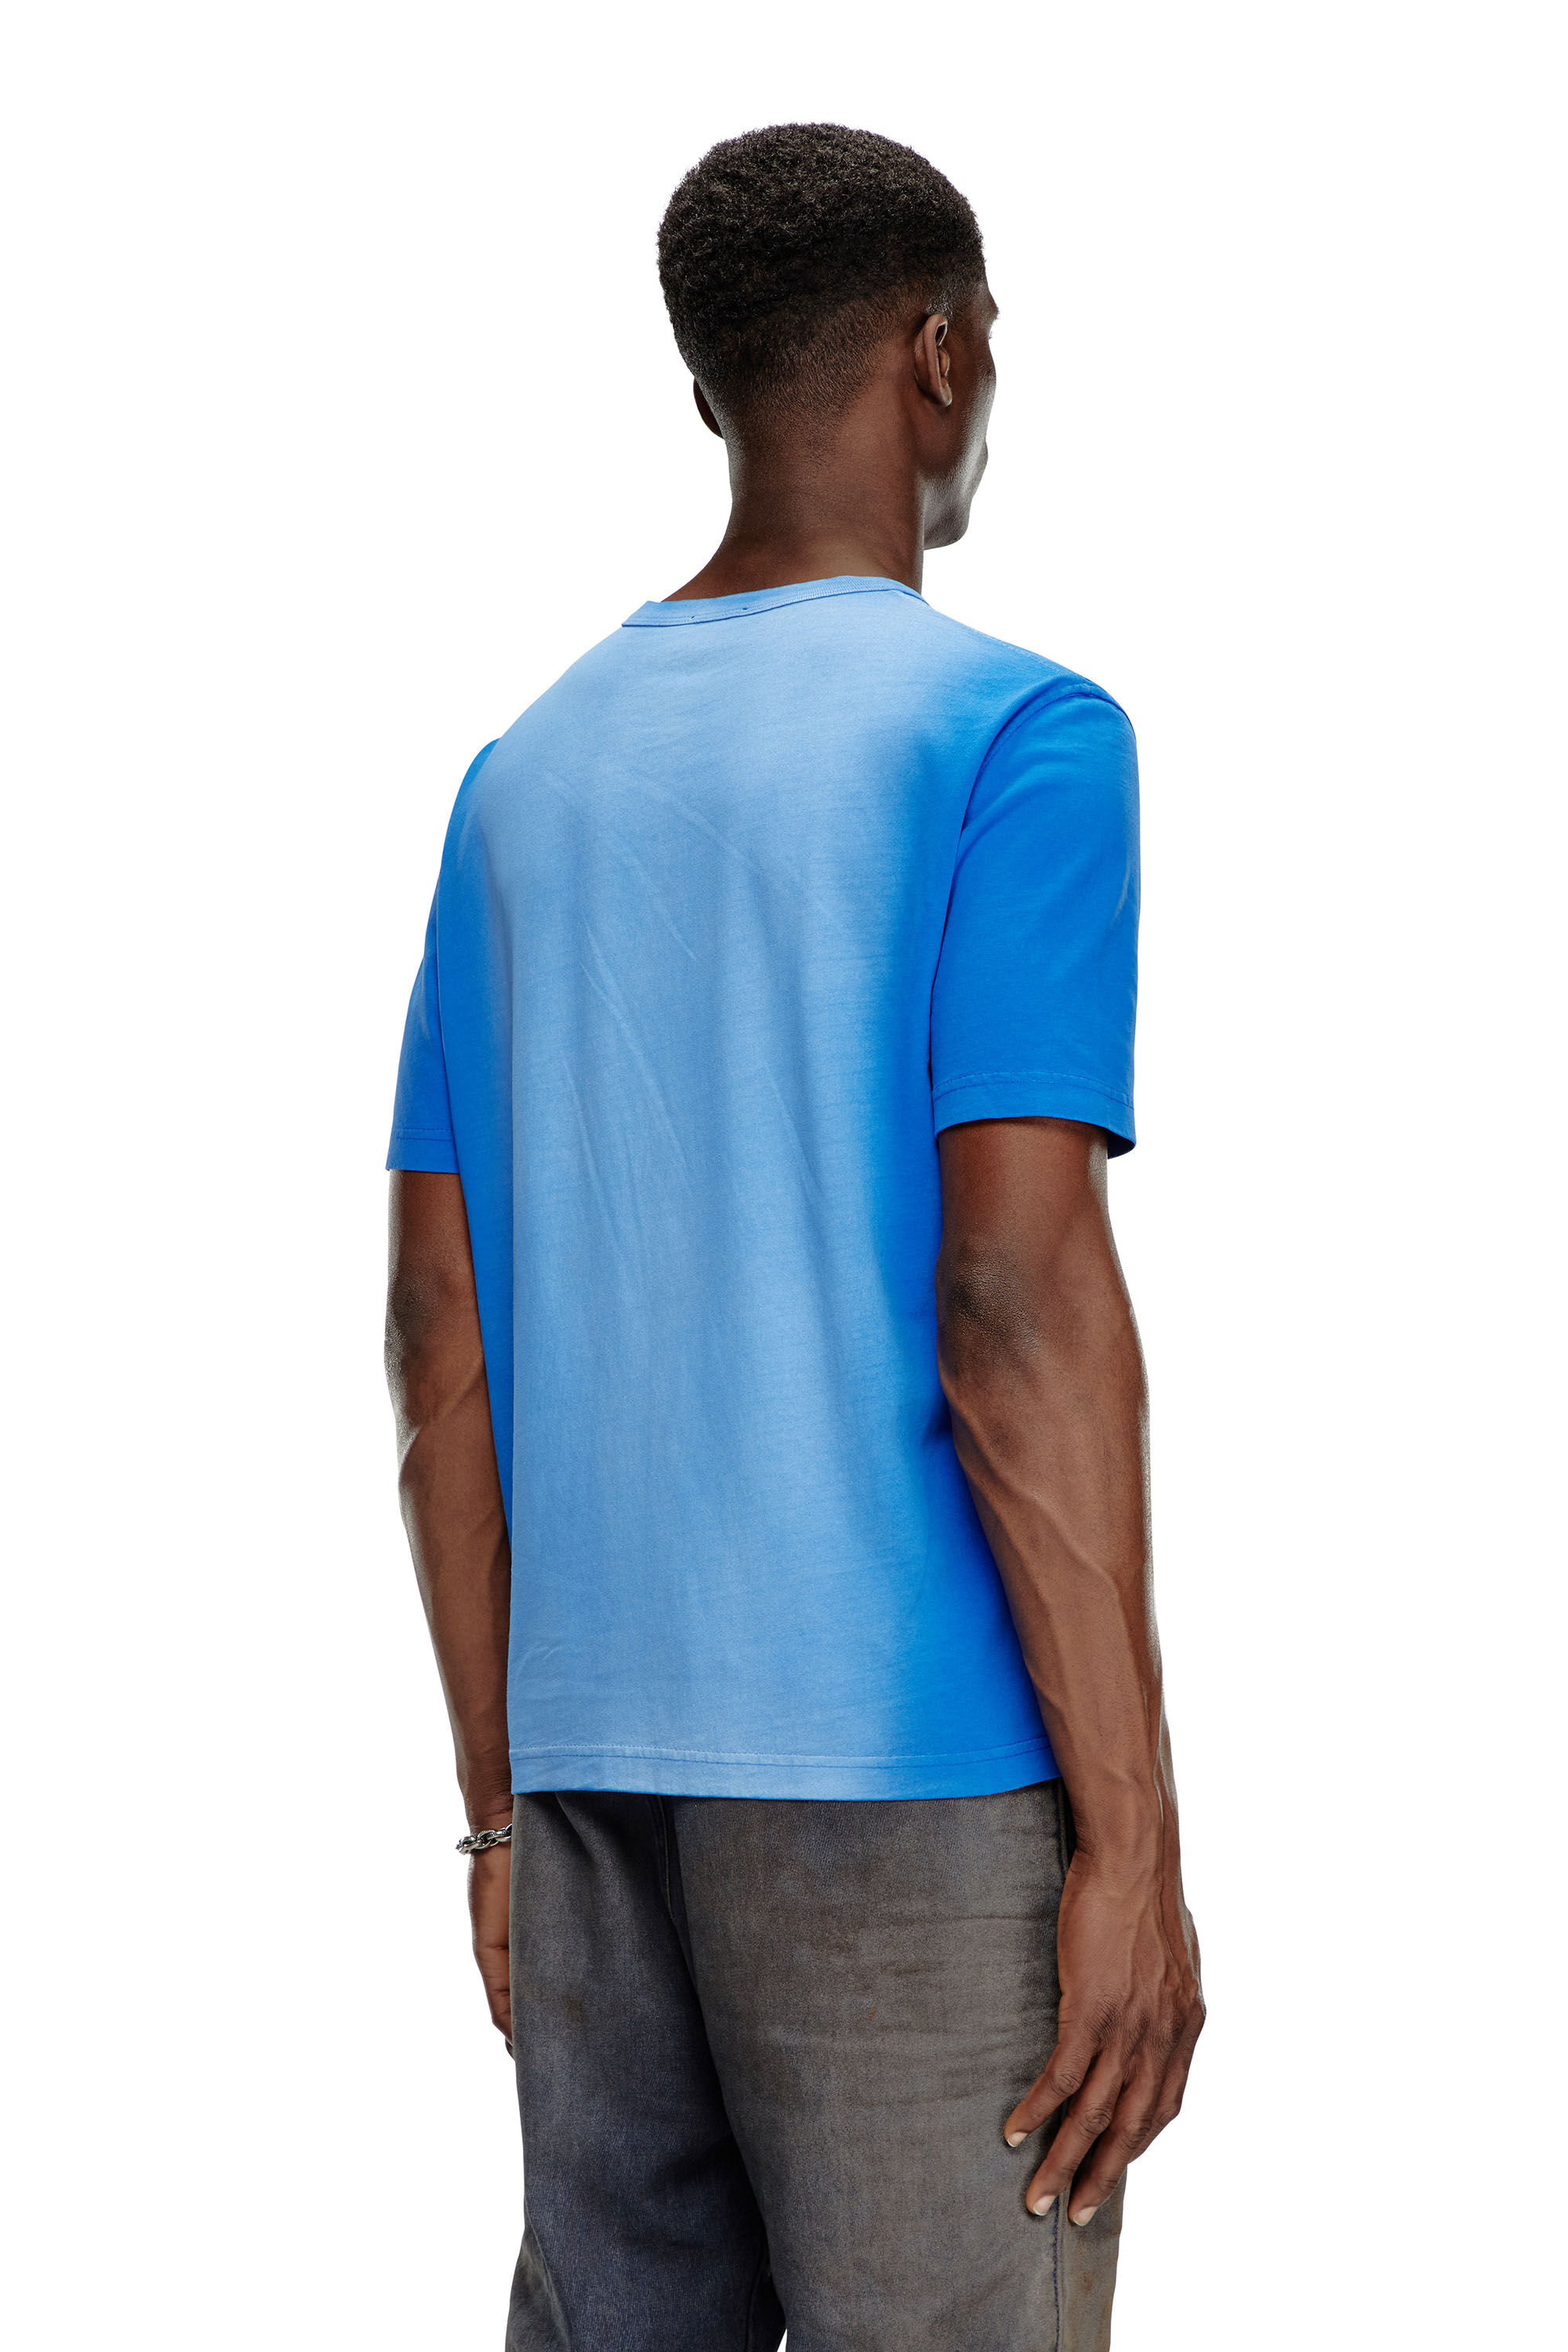 Diesel - T-ADJUST-Q2, Hombre Camiseta en tejido de algodón rociado in Azul marino - Image 4